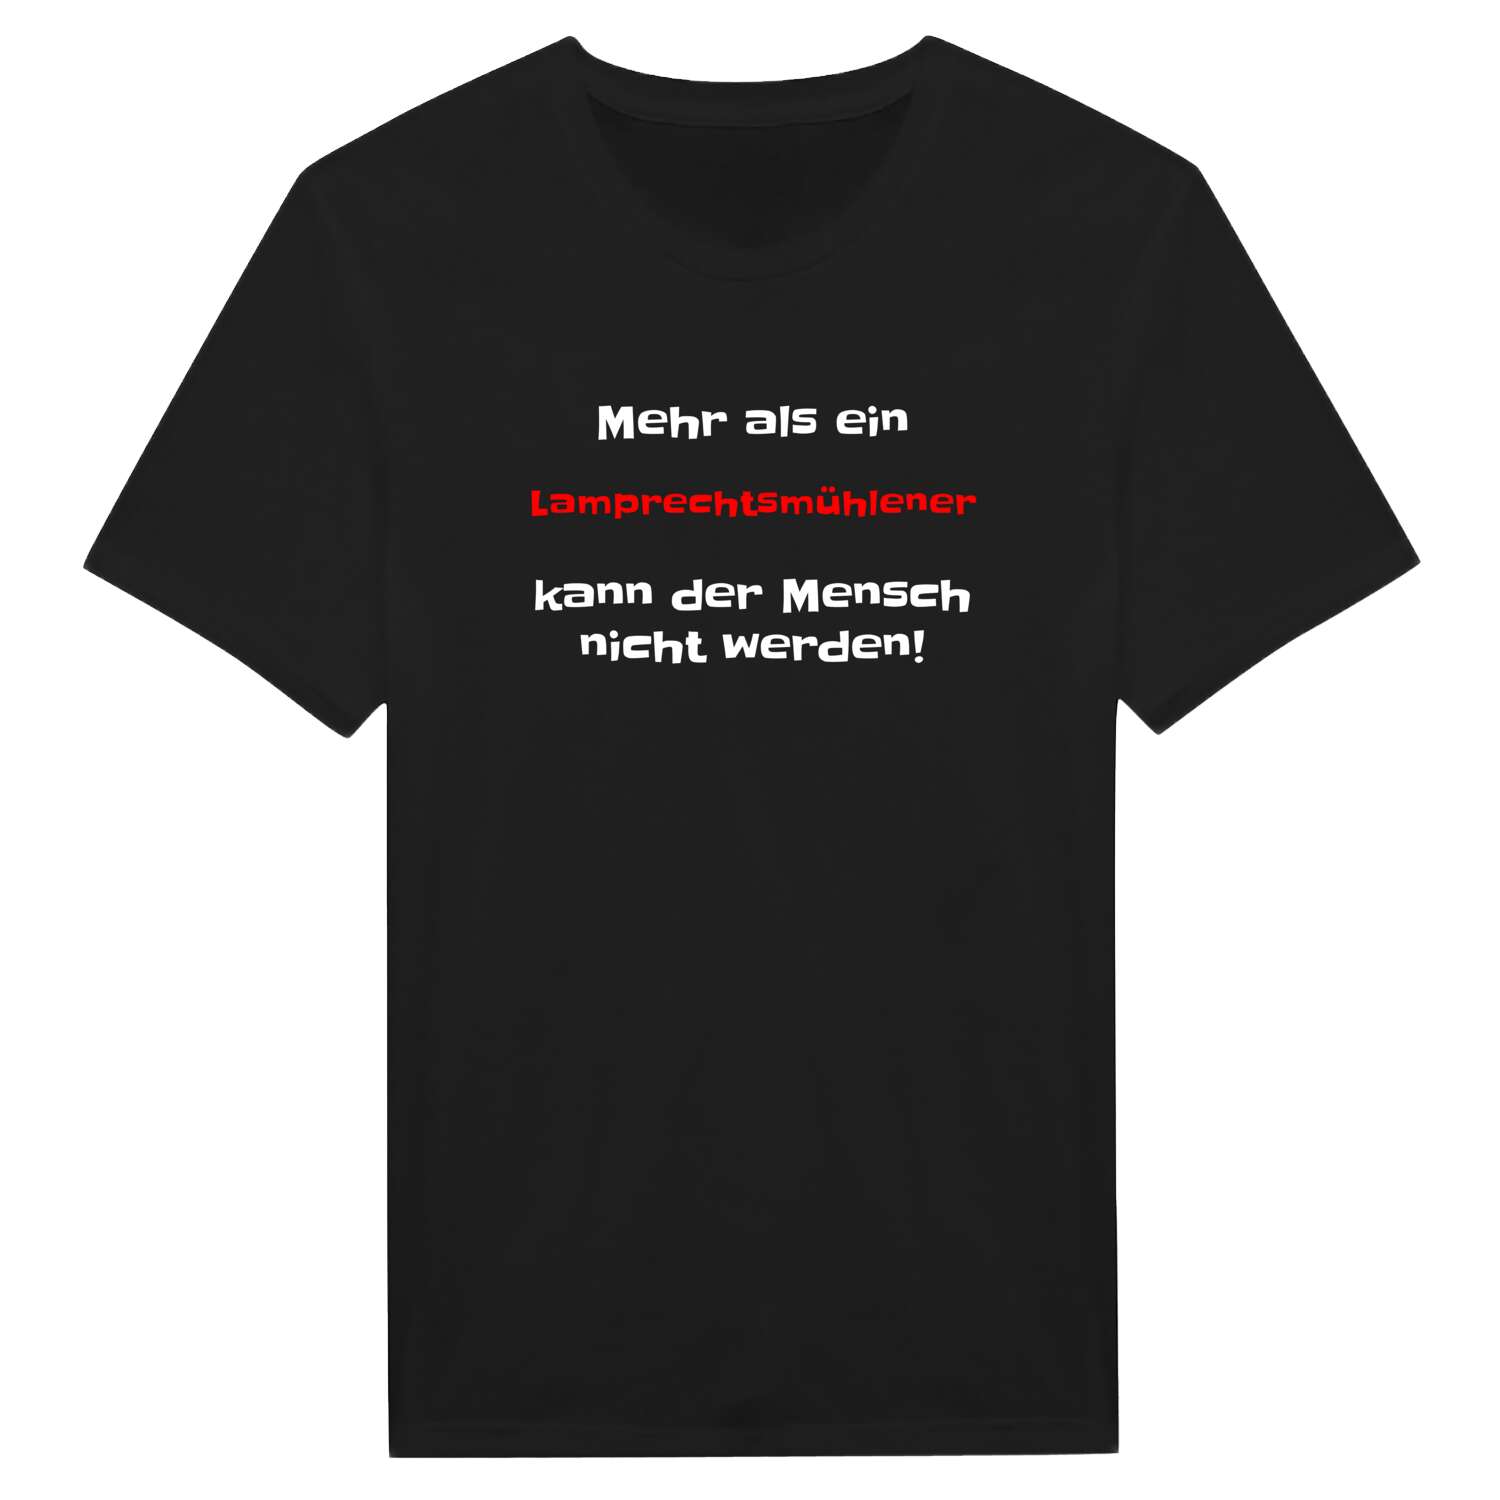 Lamprechtsmühle T-Shirt »Mehr als ein«